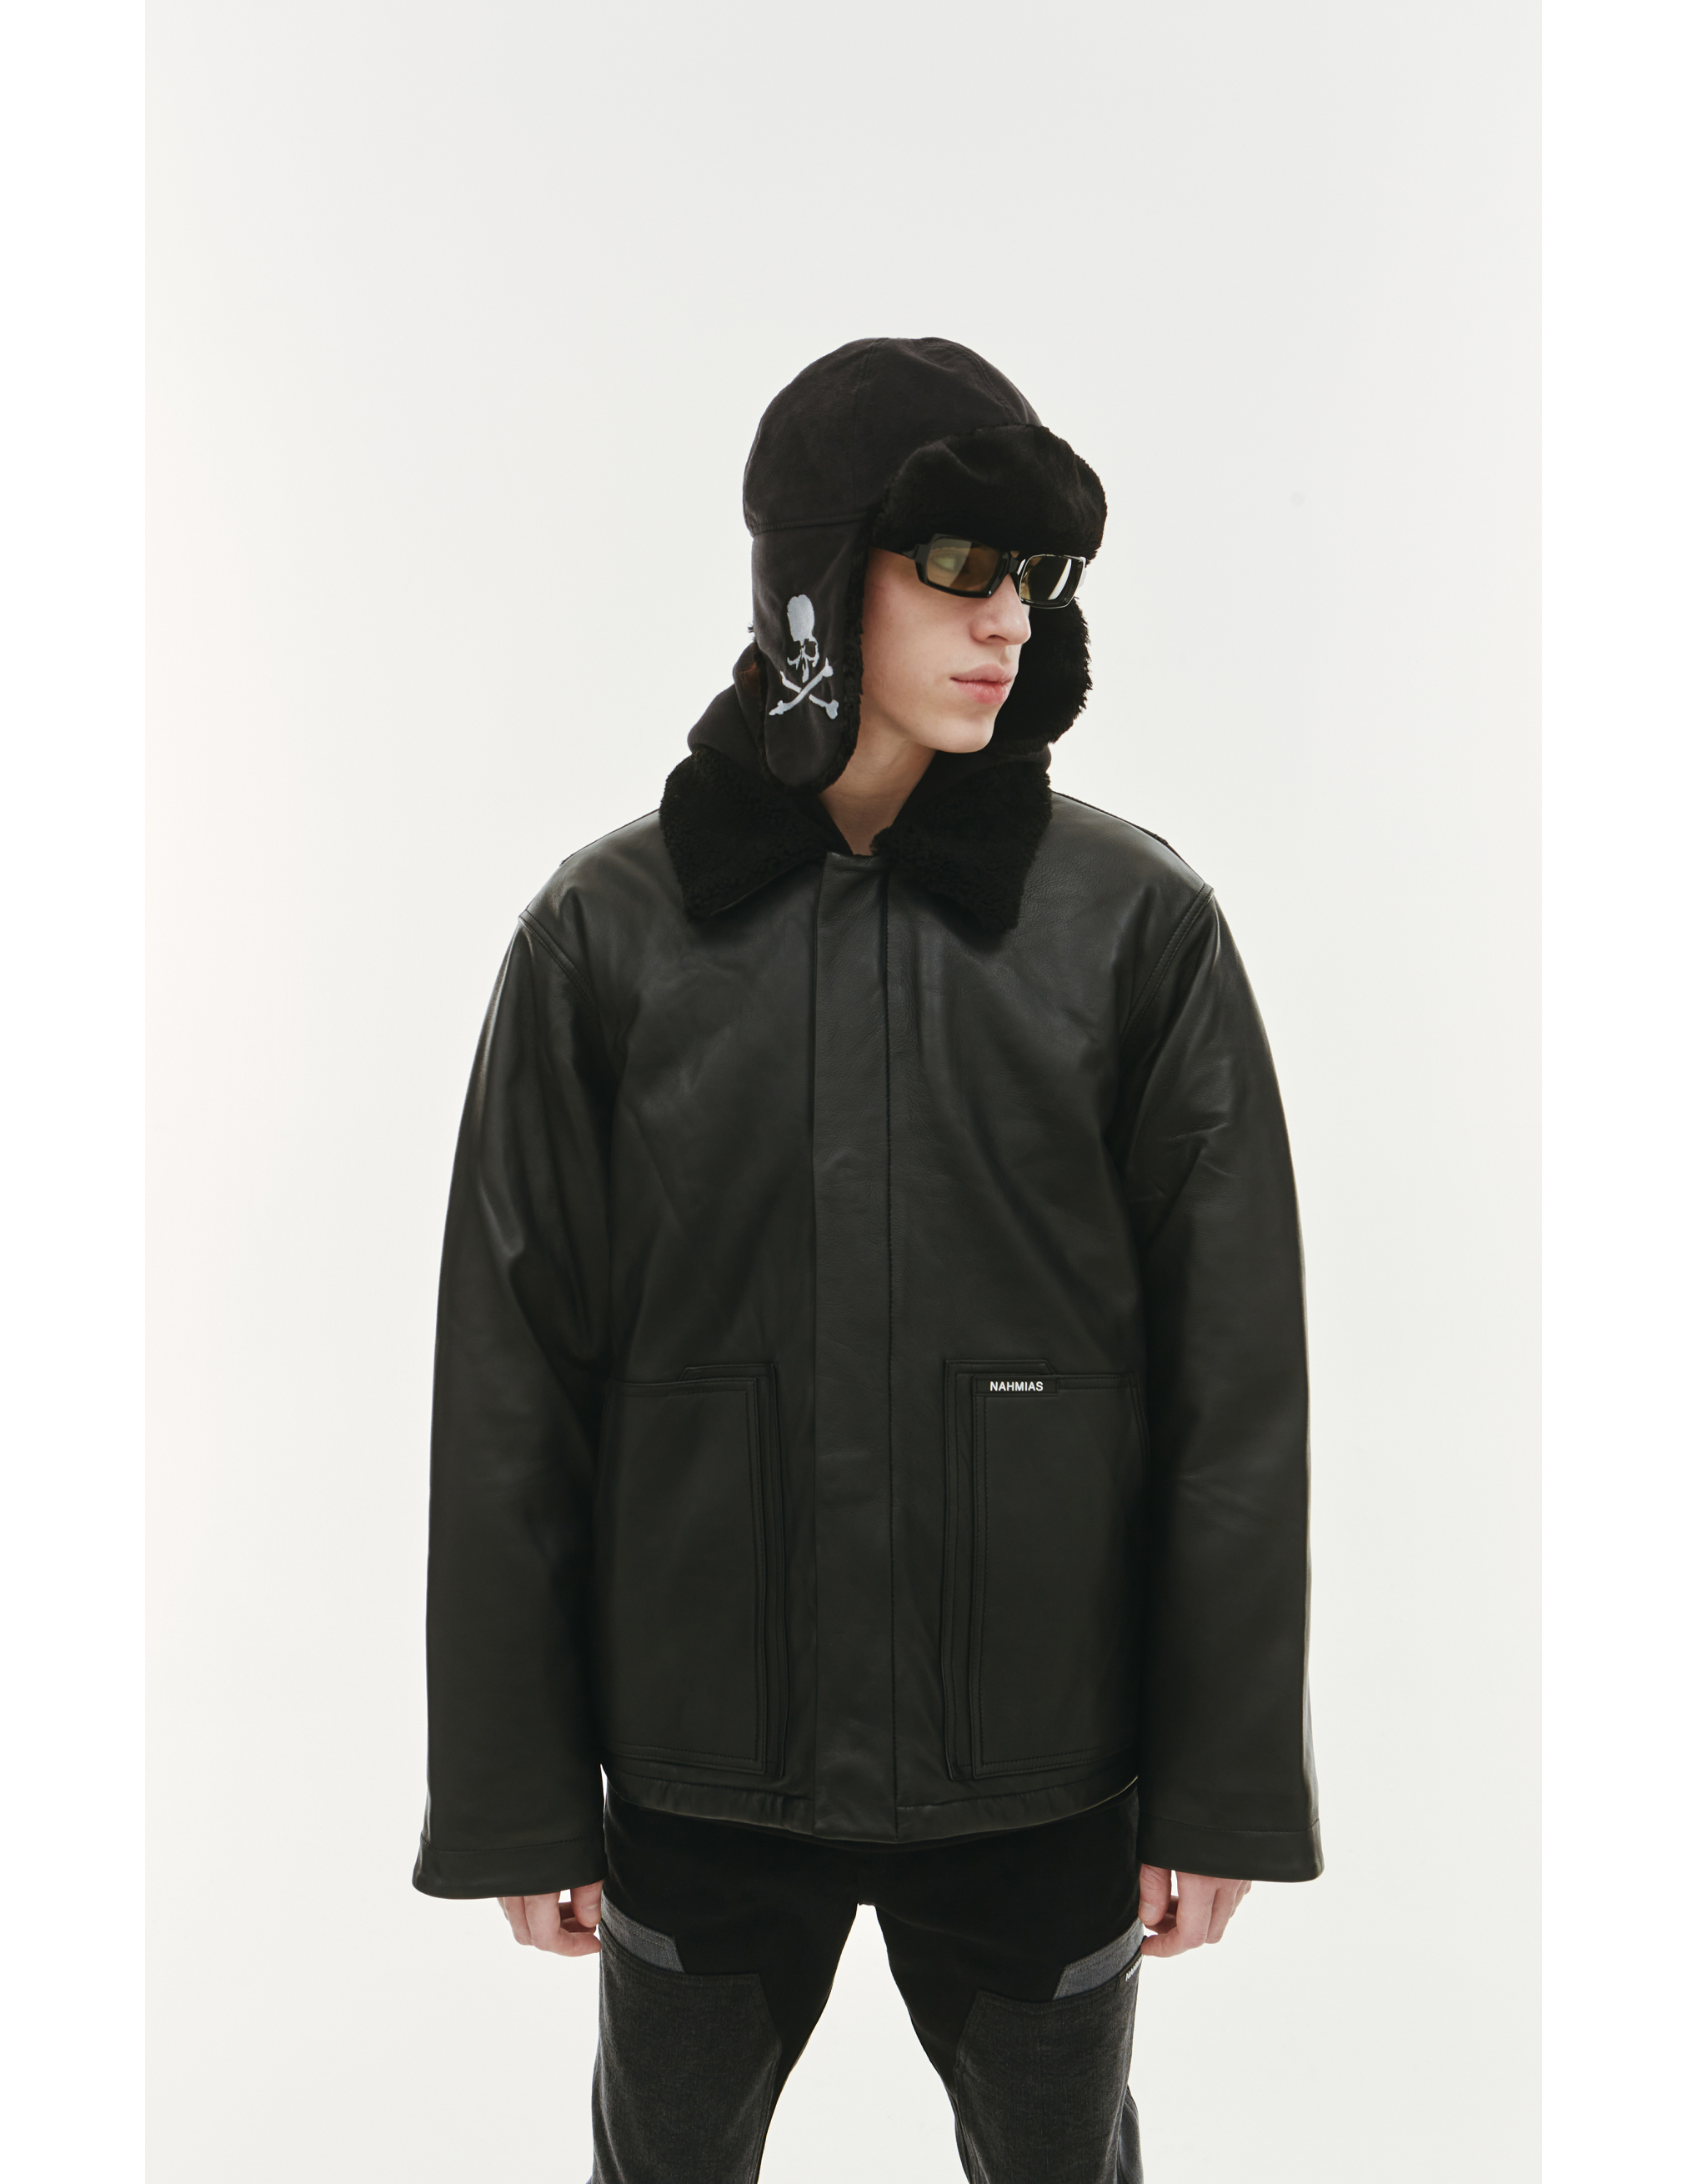 Кожаная куртка с меховым воротником Nahmias AW22-2-7017-F0046-BLACK, размер XL;L - фото 5